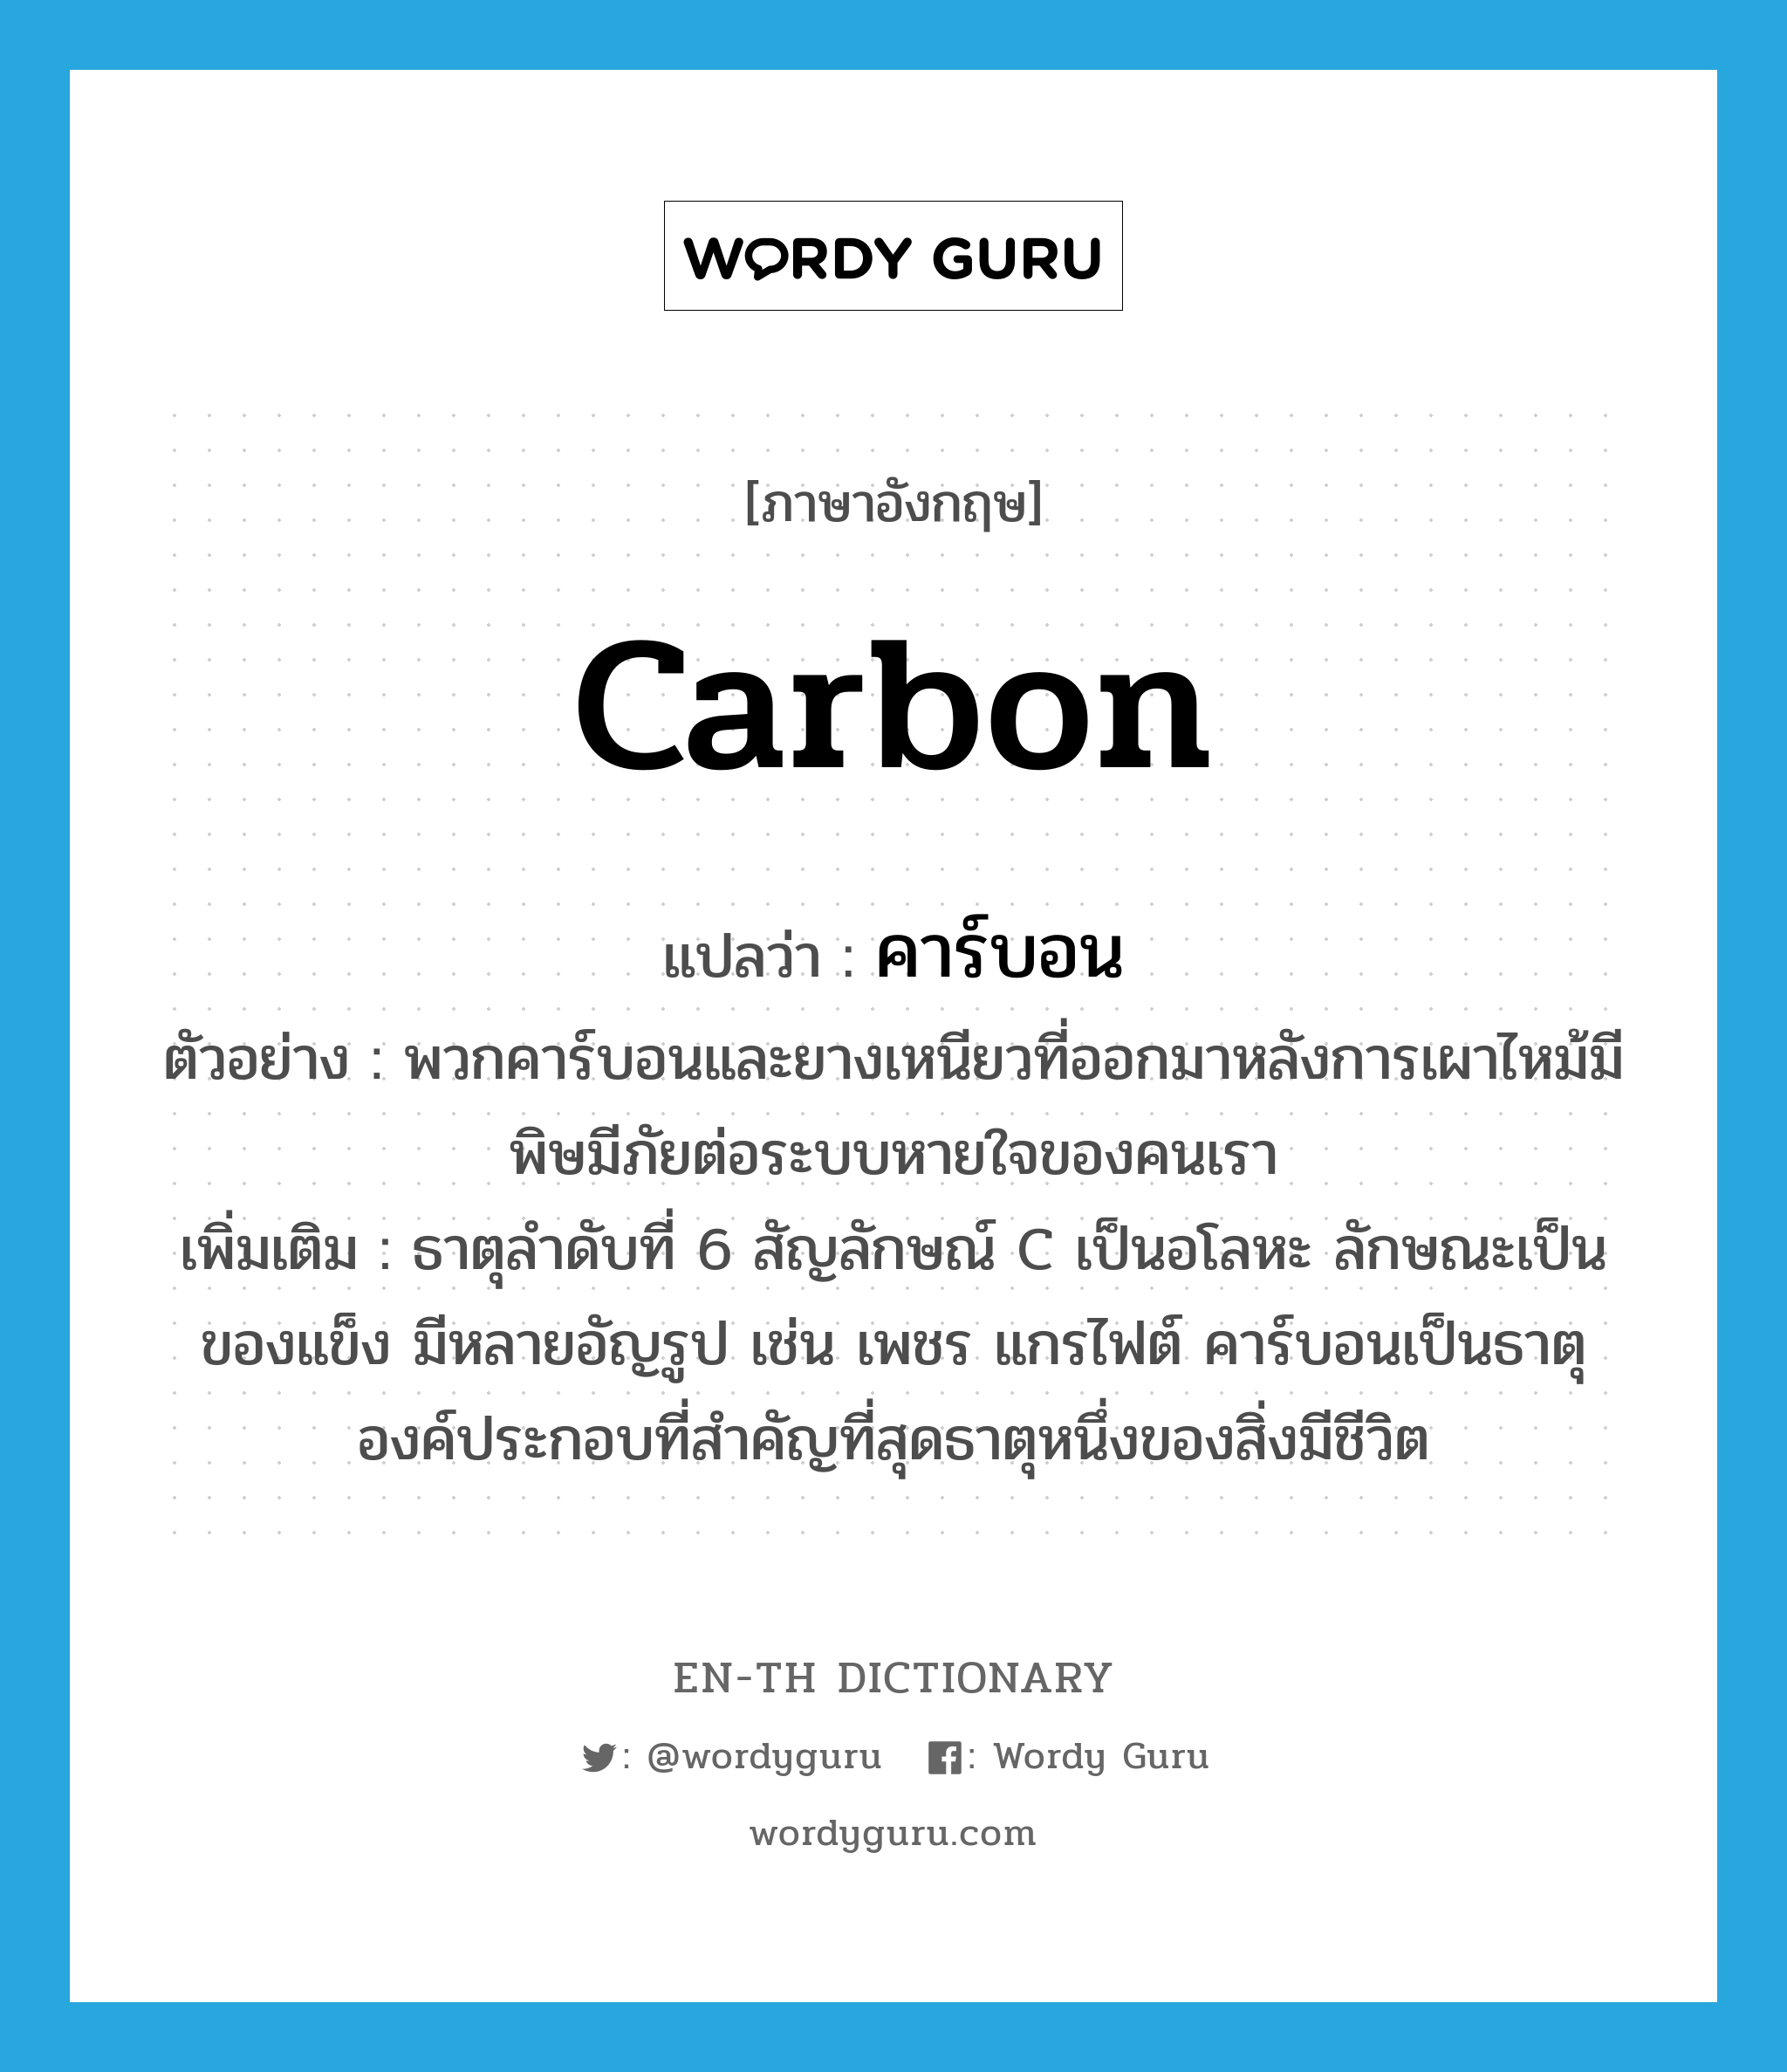 carbon แปลว่า?, คำศัพท์ภาษาอังกฤษ carbon แปลว่า คาร์บอน ประเภท N ตัวอย่าง พวกคาร์บอนและยางเหนียวที่ออกมาหลังการเผาไหม้มีพิษมีภัยต่อระบบหายใจของคนเรา เพิ่มเติม ธาตุลำดับที่ 6 สัญลักษณ์ C เป็นอโลหะ ลักษณะเป็นของแข็ง มีหลายอัญรูป เช่น เพชร แกรไฟต์ คาร์บอนเป็นธาตุองค์ประกอบที่สำคัญที่สุดธาตุหนึ่งของสิ่งมีชีวิต หมวด N